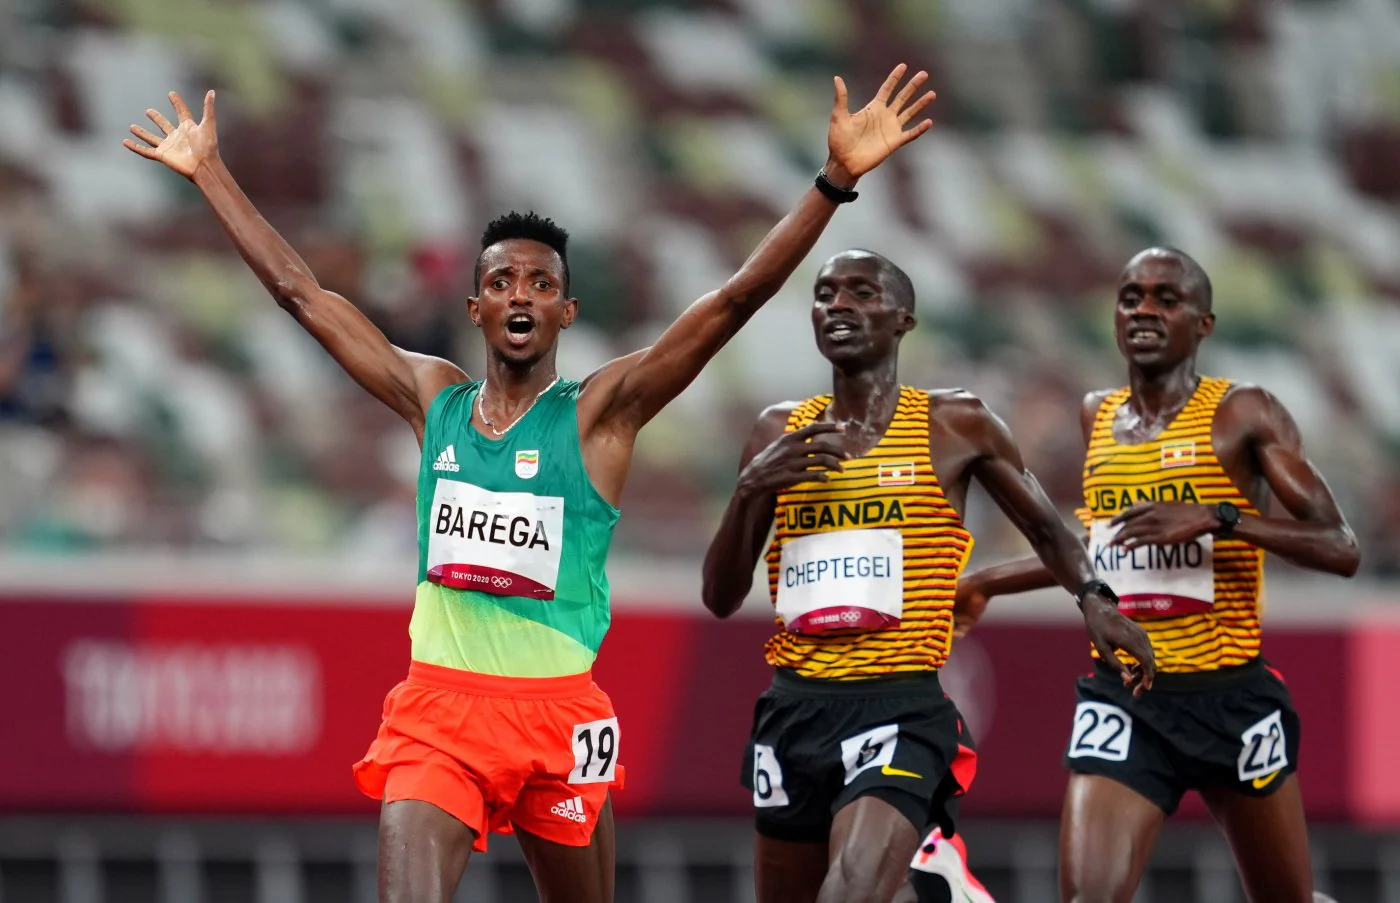 Atletismo: El Juan previo a gloria olímpica | El Diario Vasco